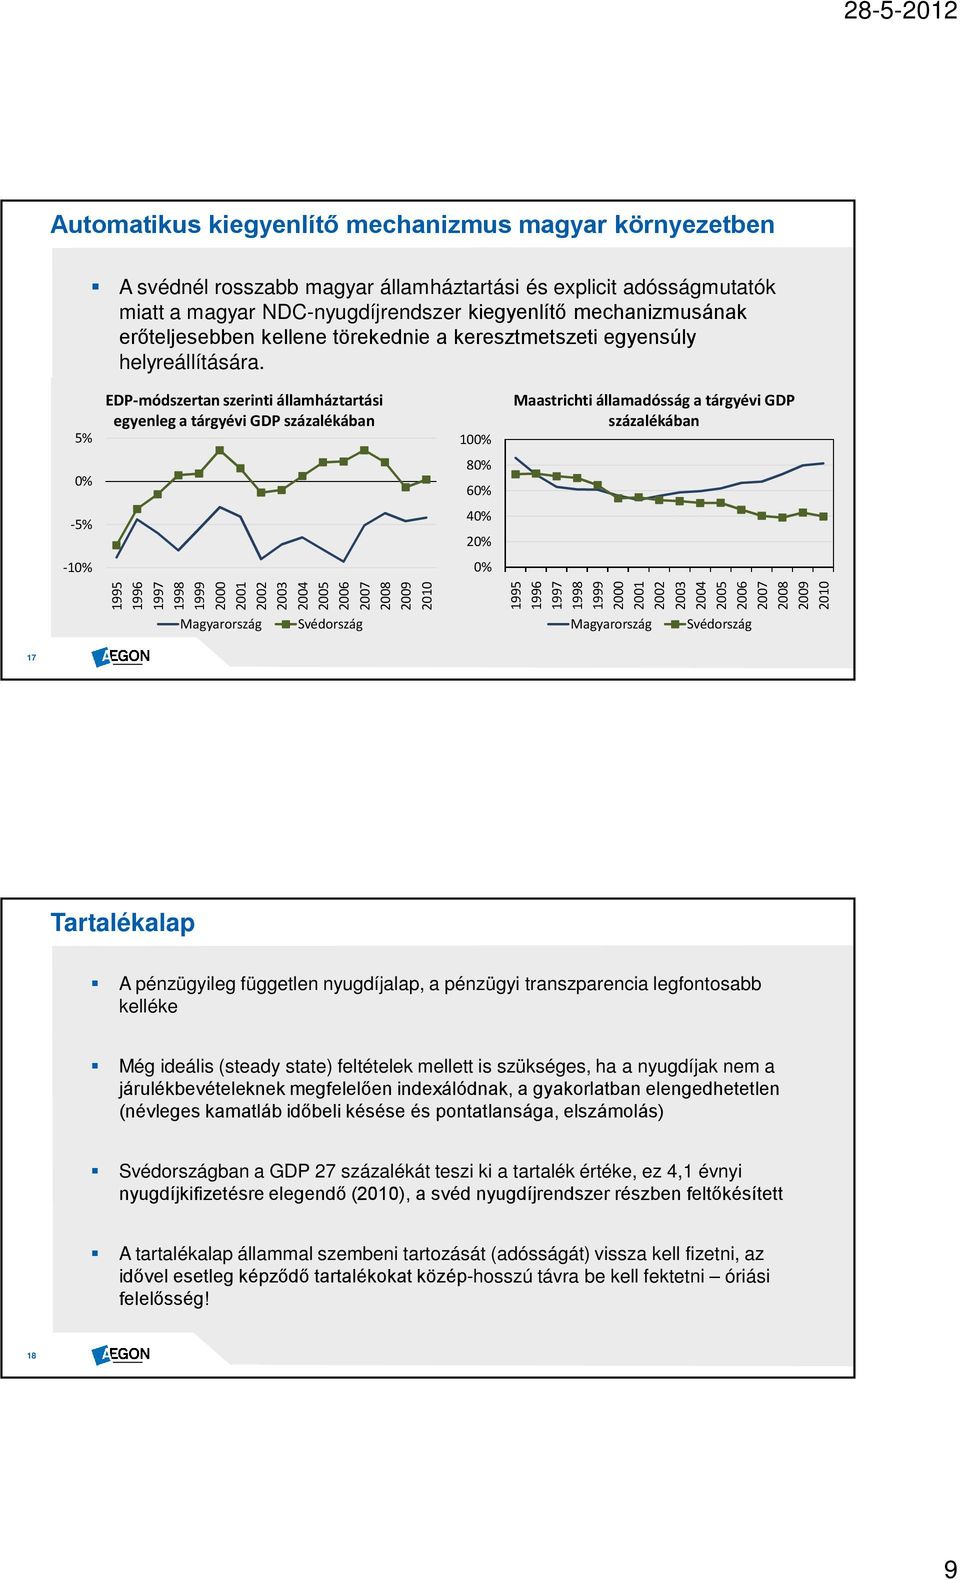 EDP-módszertan szerinti államháztartási Maastrichti államadósság a tárgyévi GDP A svéd mérleg eszközoldala gyenge megalapozottságú, bár a egyenleg a tárgyévi GDP százalékában százalékában